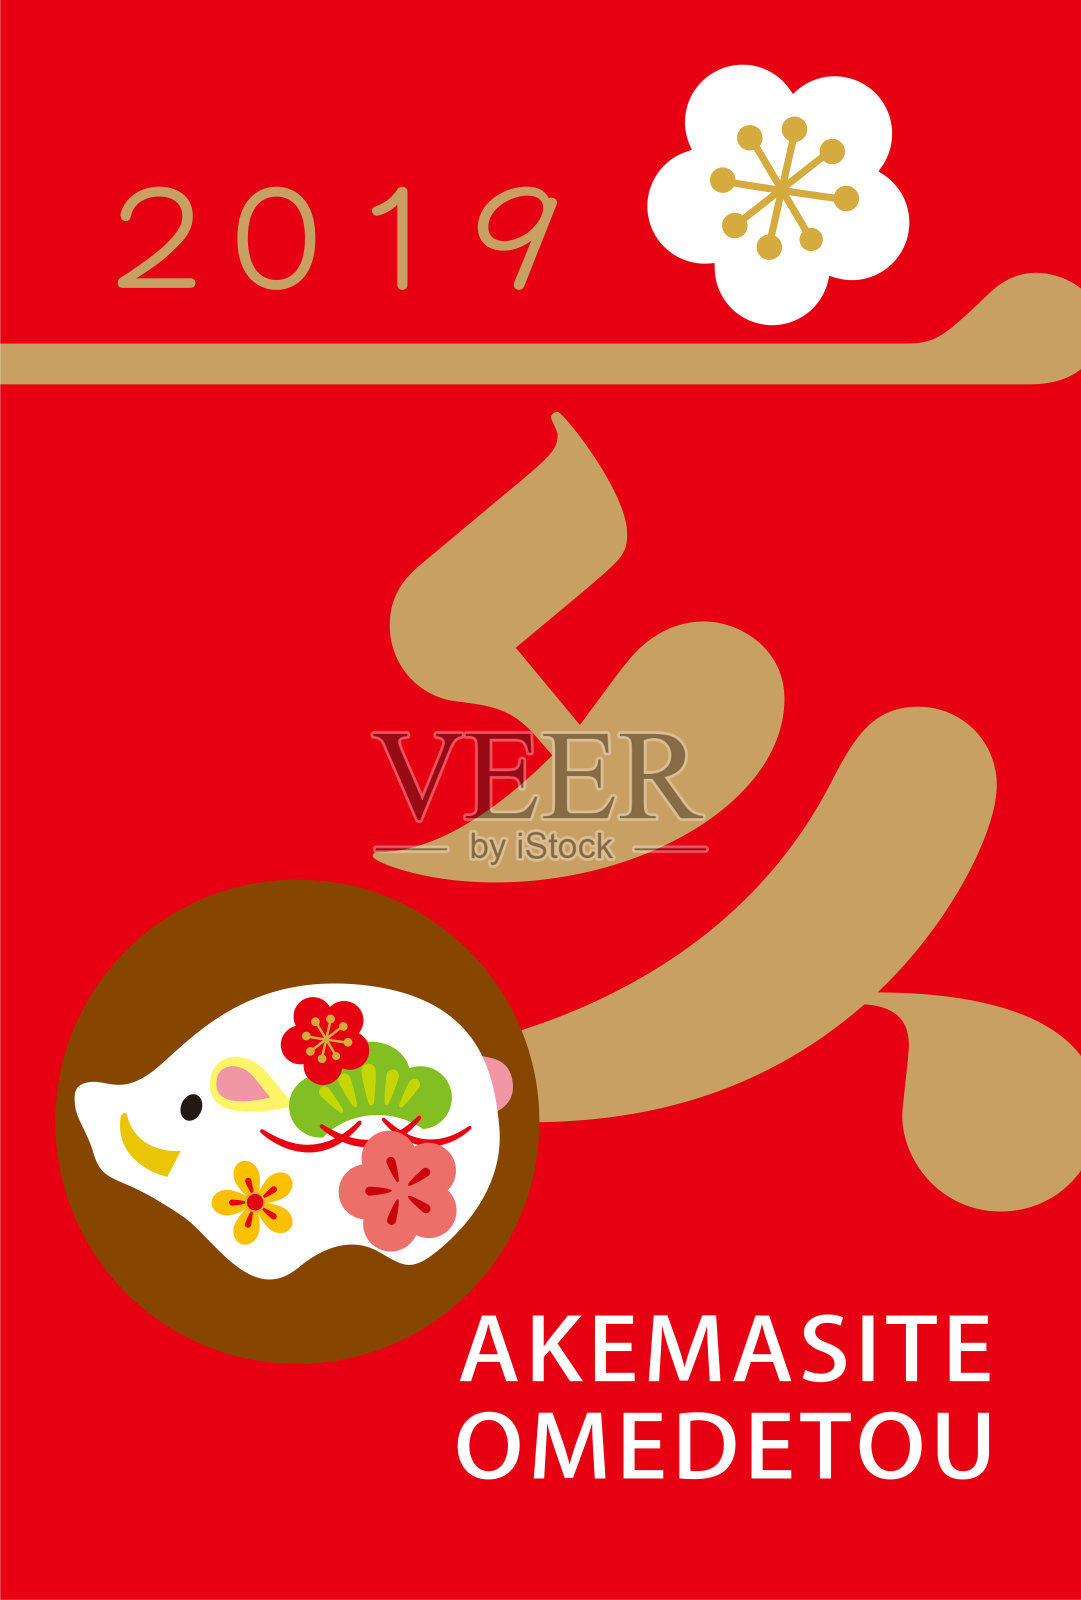 日本2019年新年贺卡设计模板素材